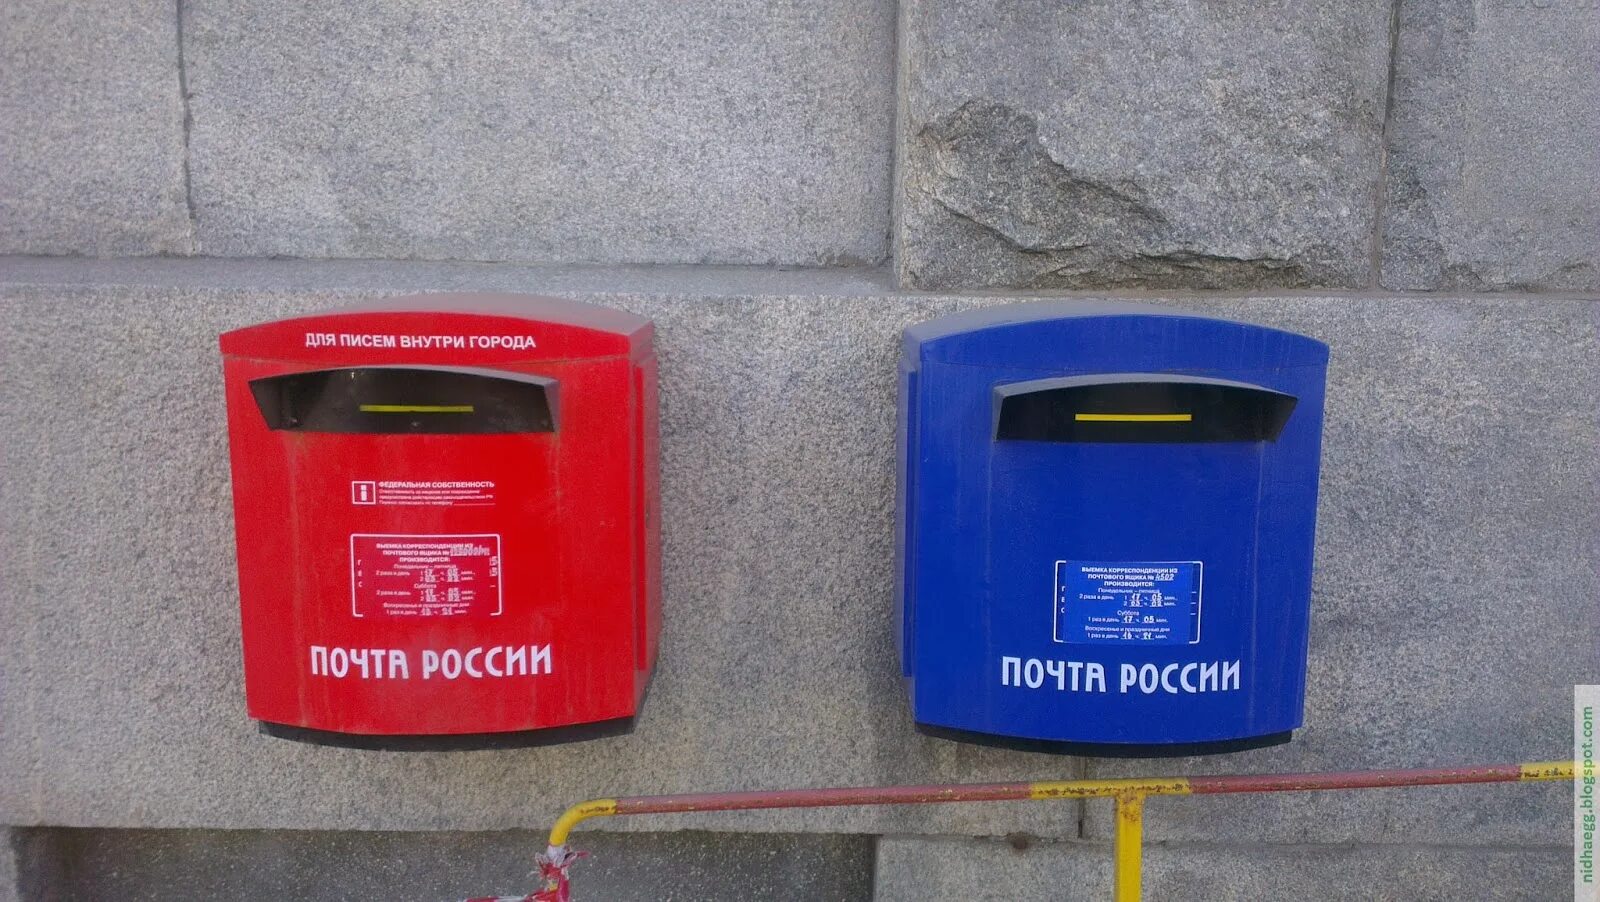 Где в россии самый высокий почтовый ящик. Каменный почтовый ящик. Новые почтовые ящики. Первые почтовые ящики в Москве. Почтовый ящик изнутри.